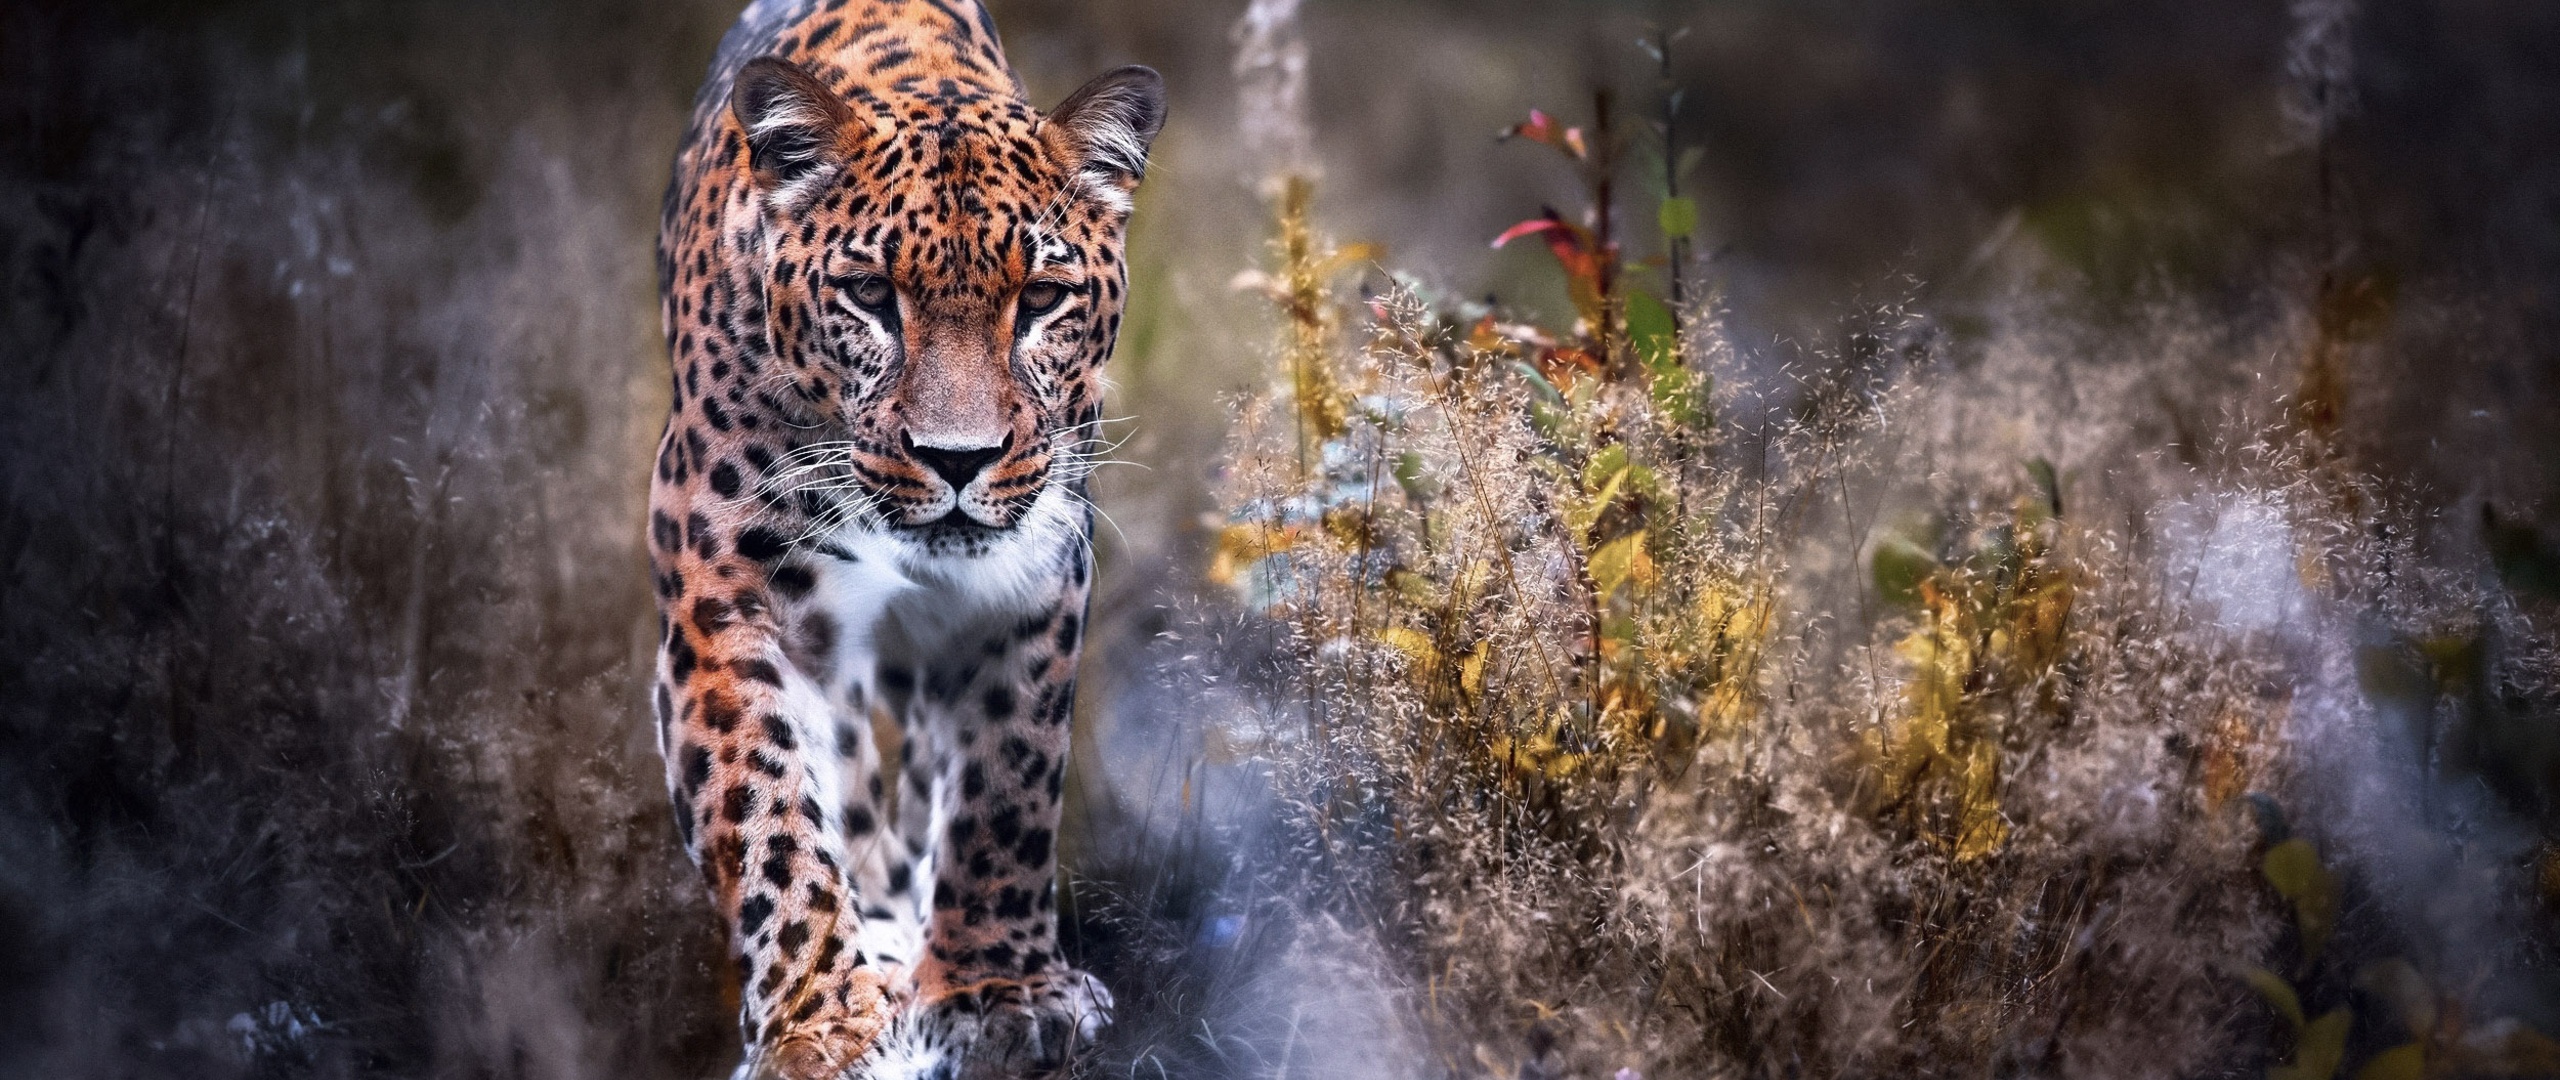 leopard-big-cat-i6-2560x1080.jpg